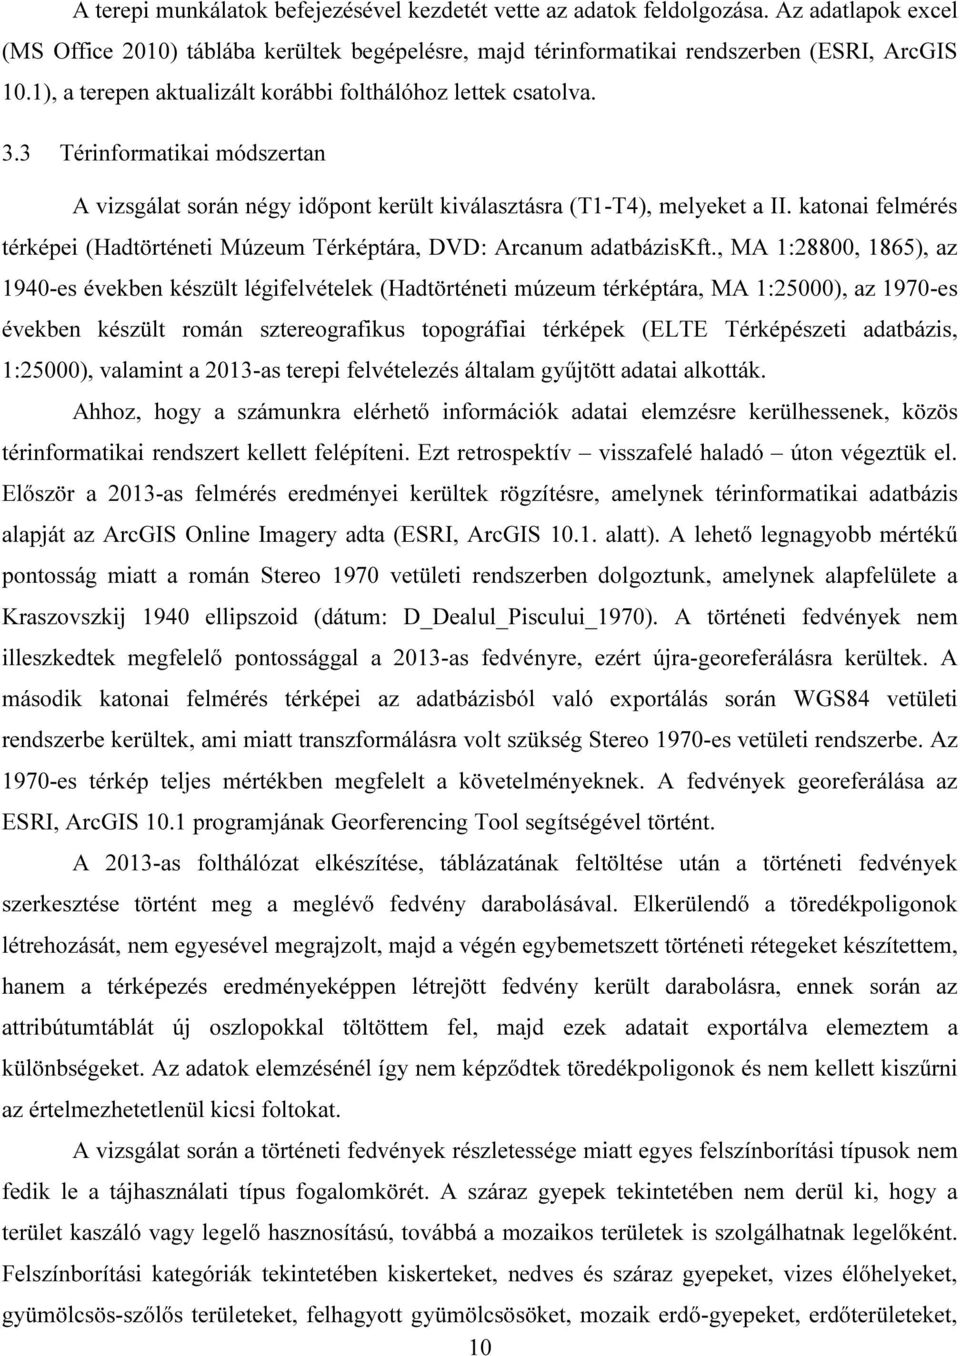 katonai felmérés térképei (Hadtörténeti Múzeum Térképtára, DVD: Arcanum adatbáziskft.